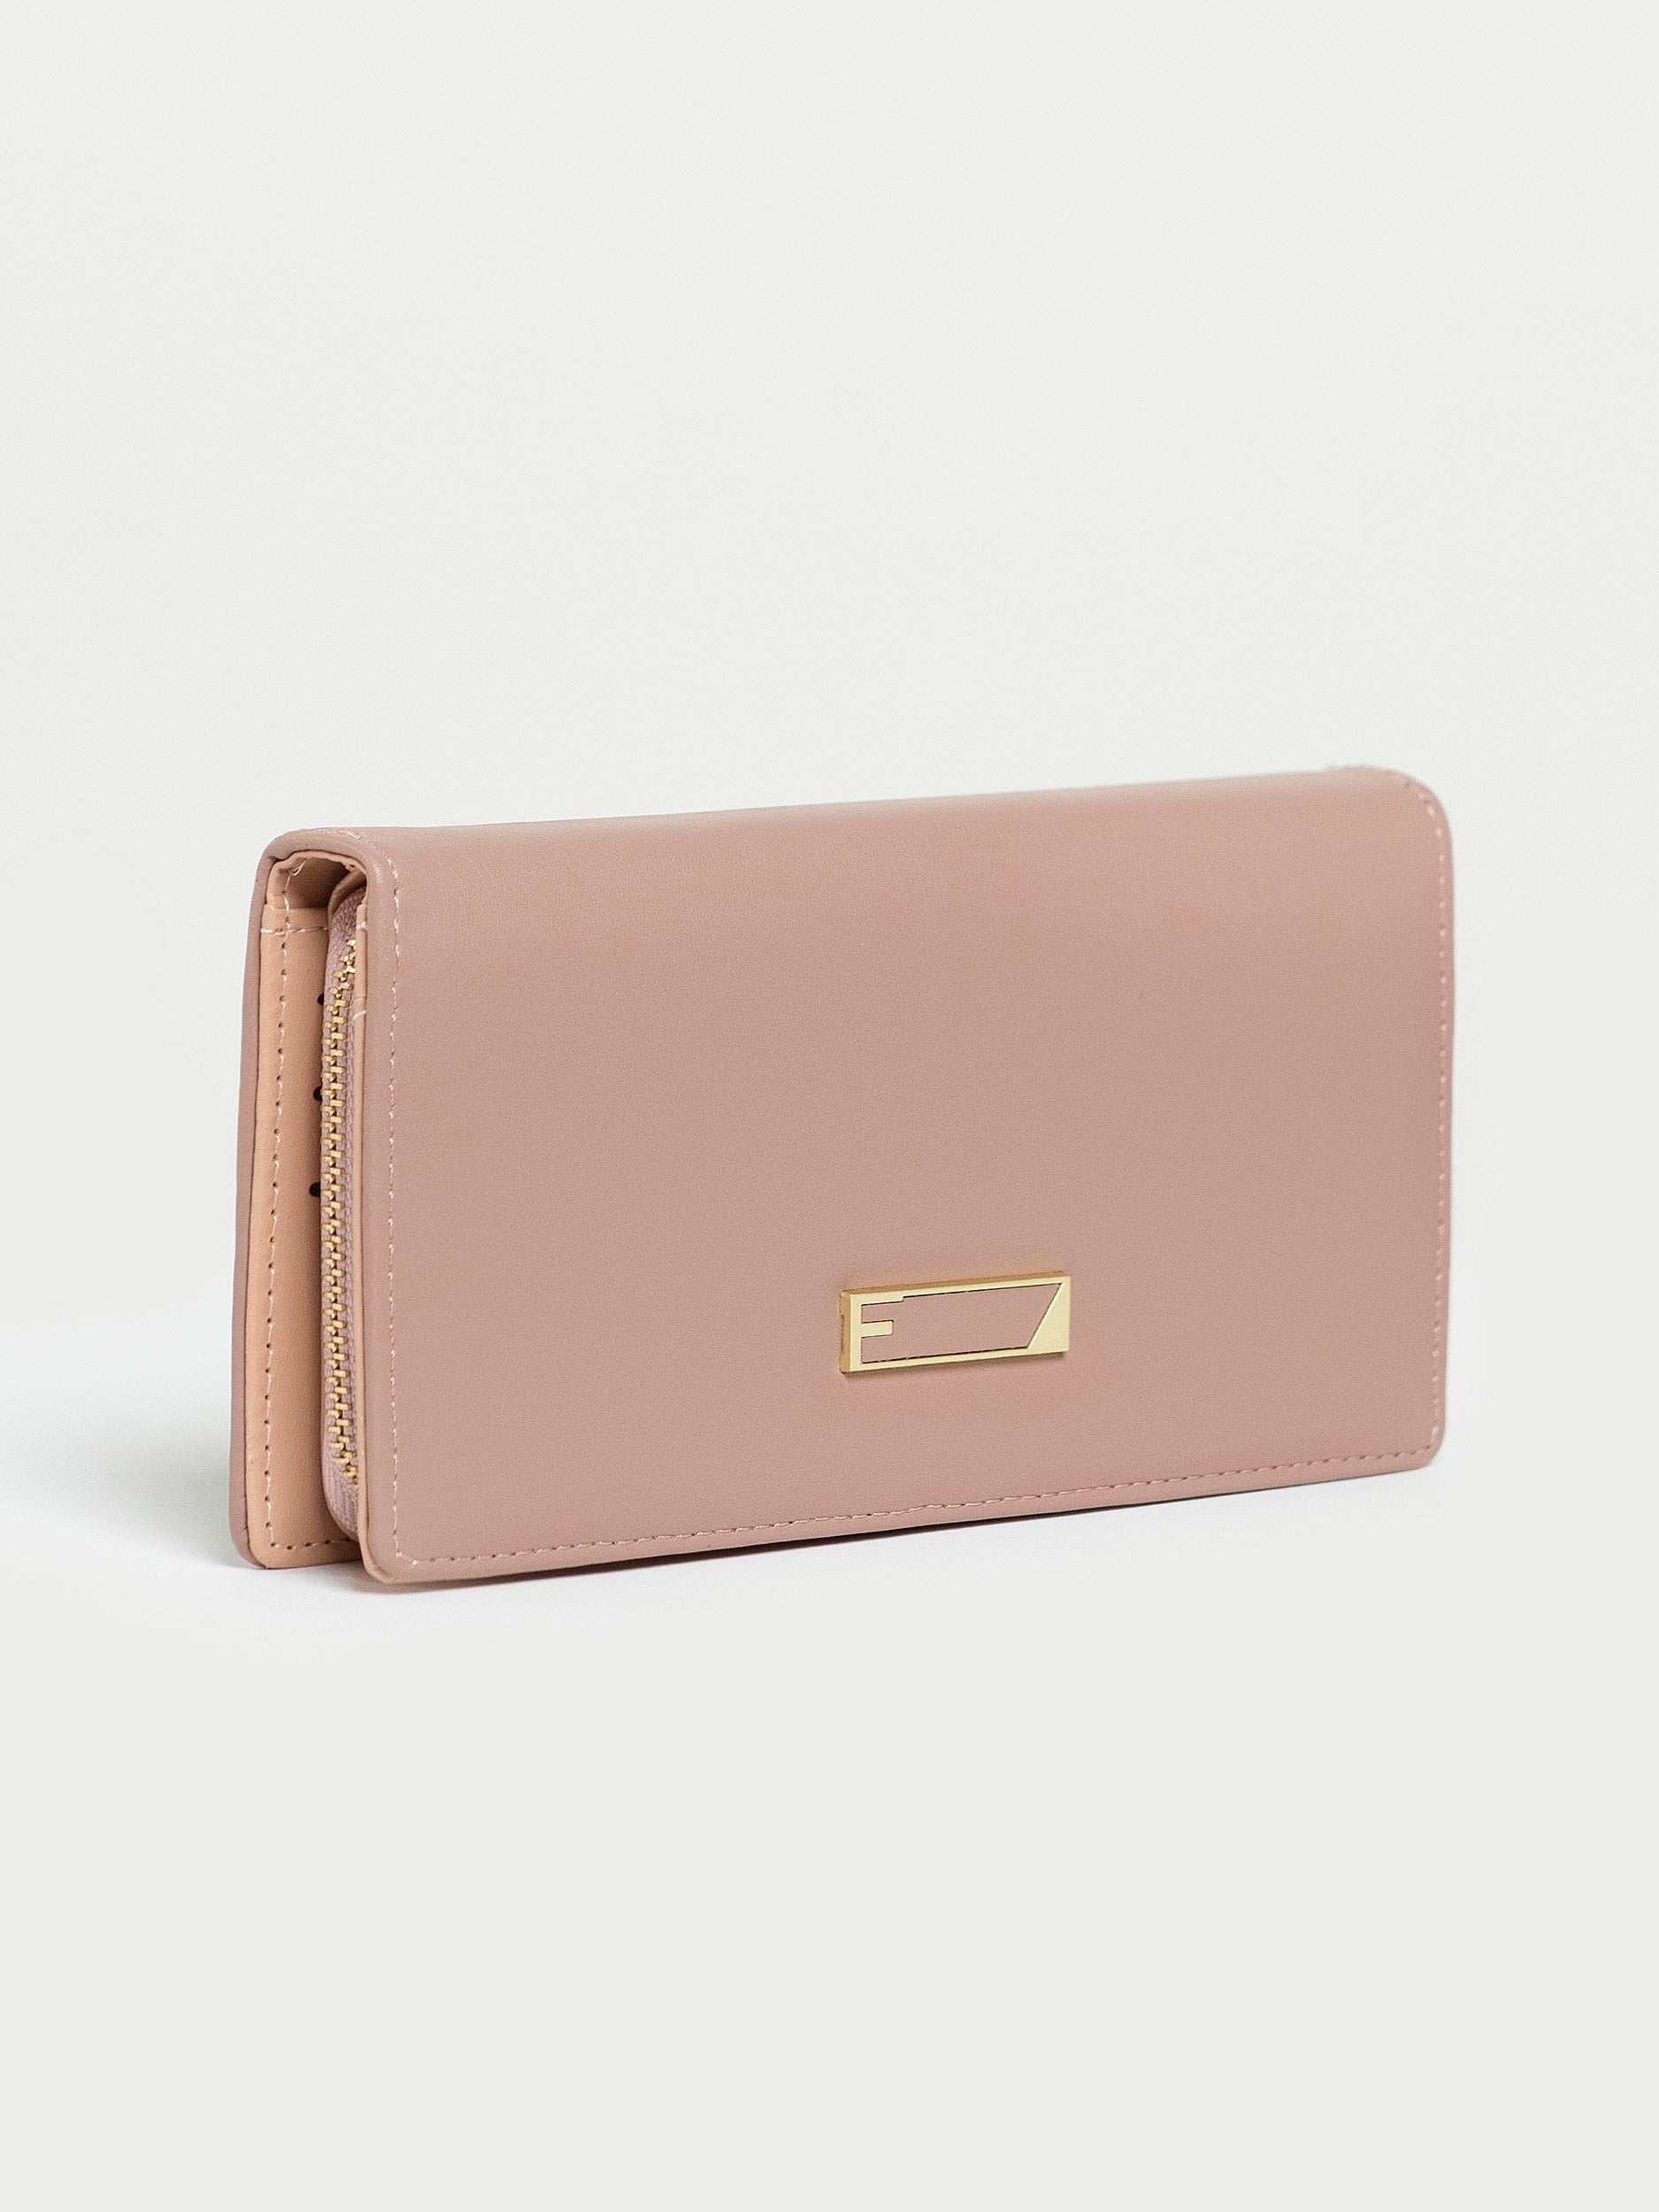 zipped-wallet